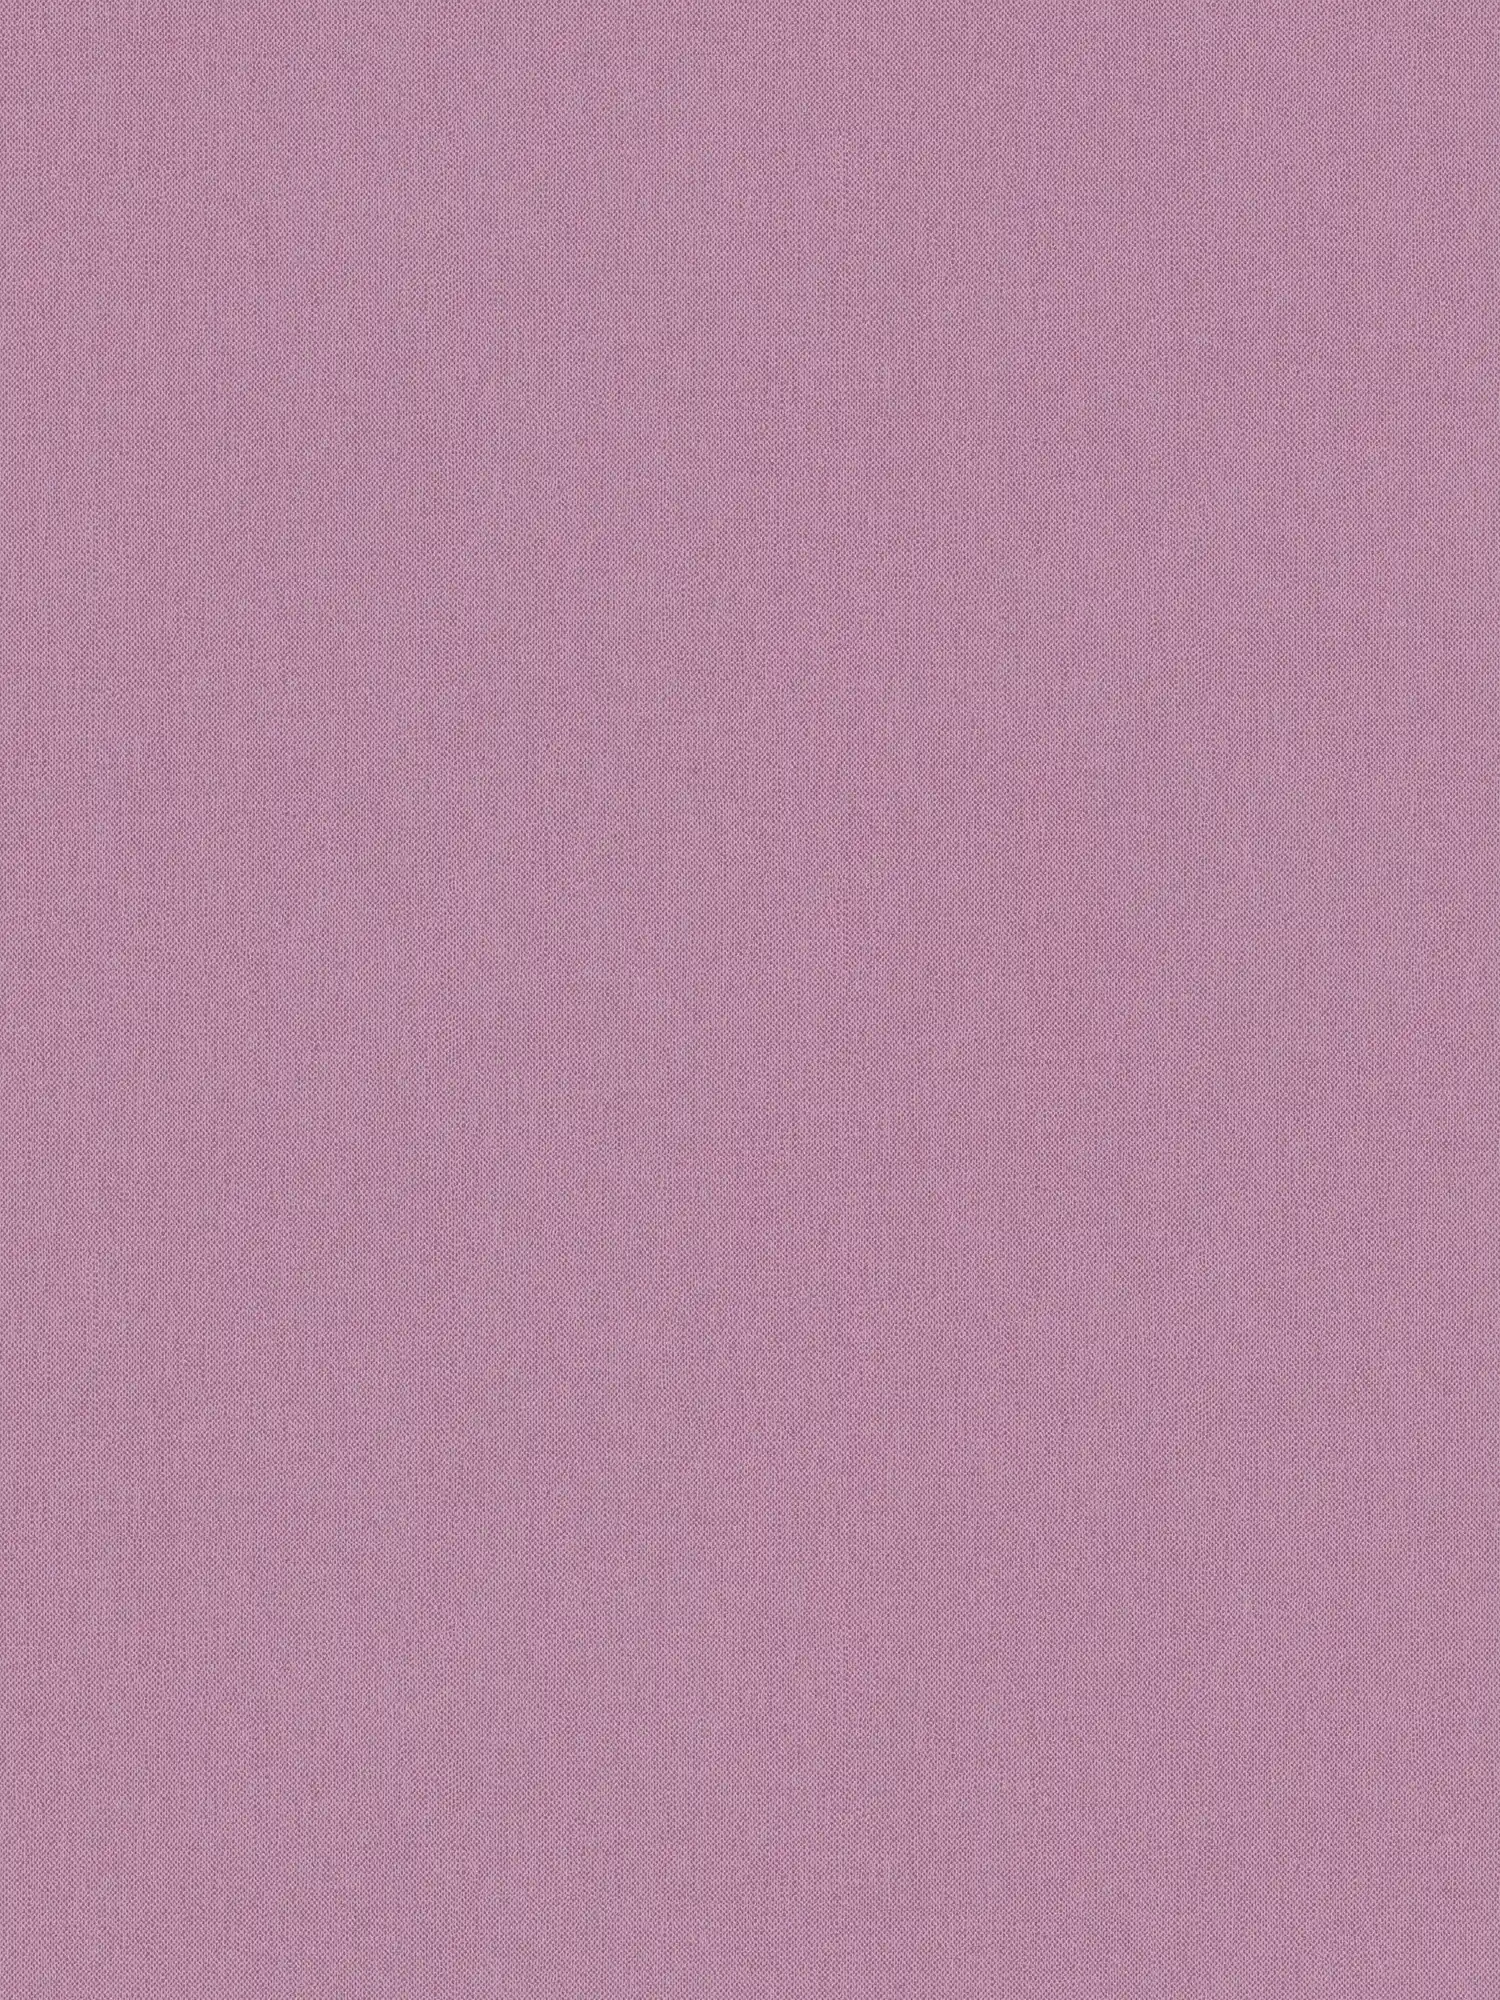 papel pintado lila liso textura y aspecto textil - lila
